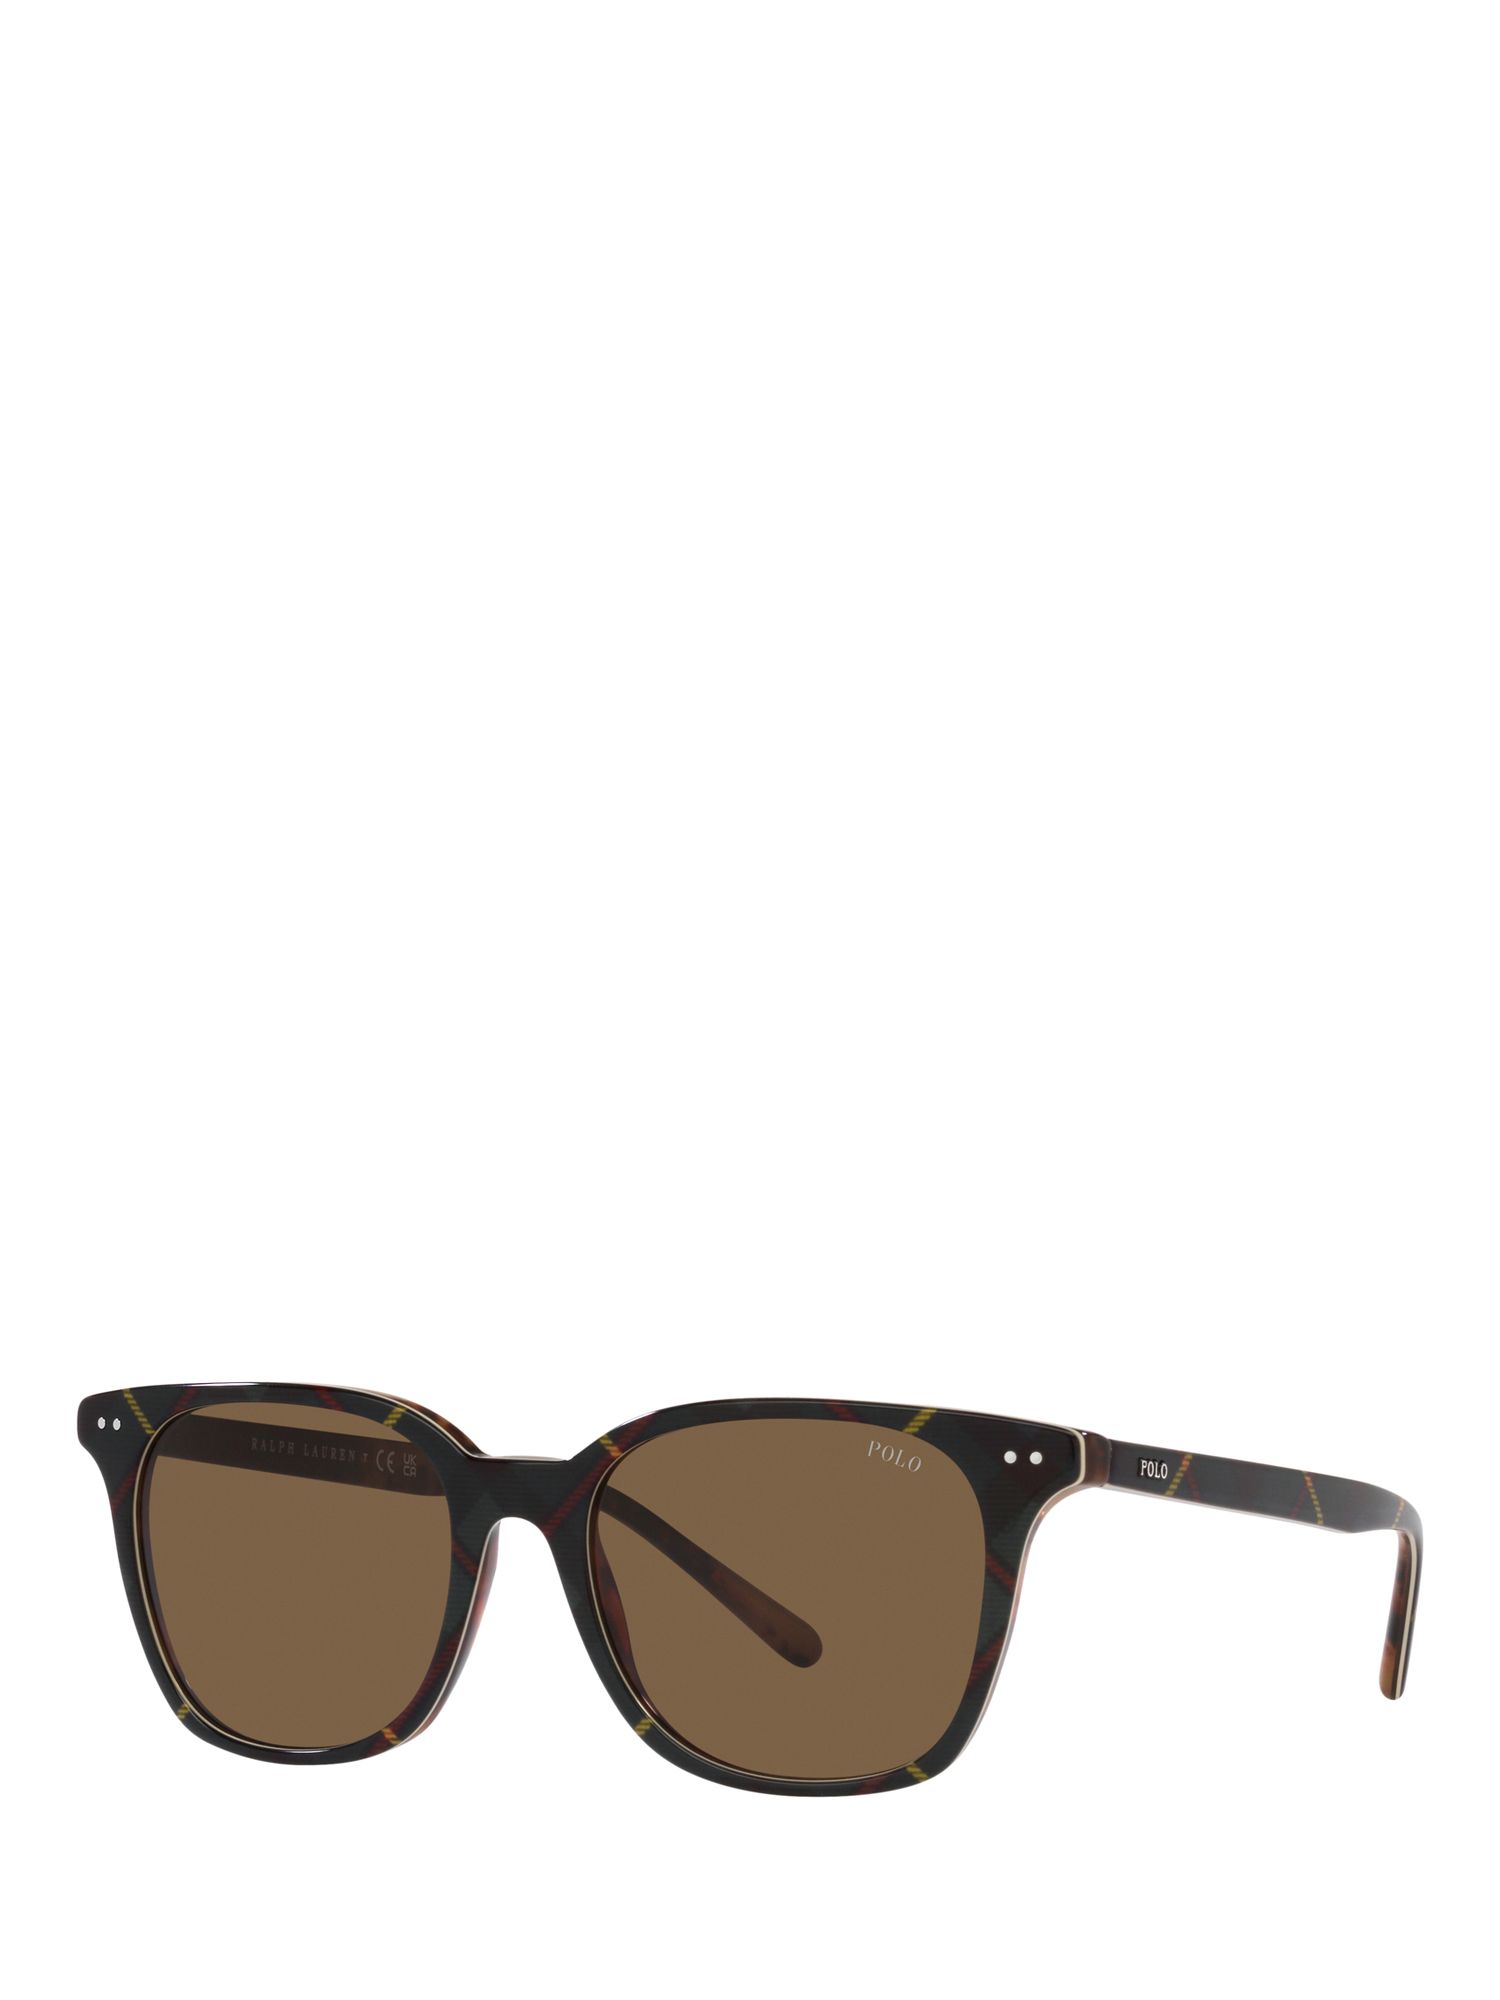 Мужские солнцезащитные очки Polo PH4187 Ralph Lauren, блестящее платье гордон/коричневый солнцезащитные очки polo ralph lauren черный